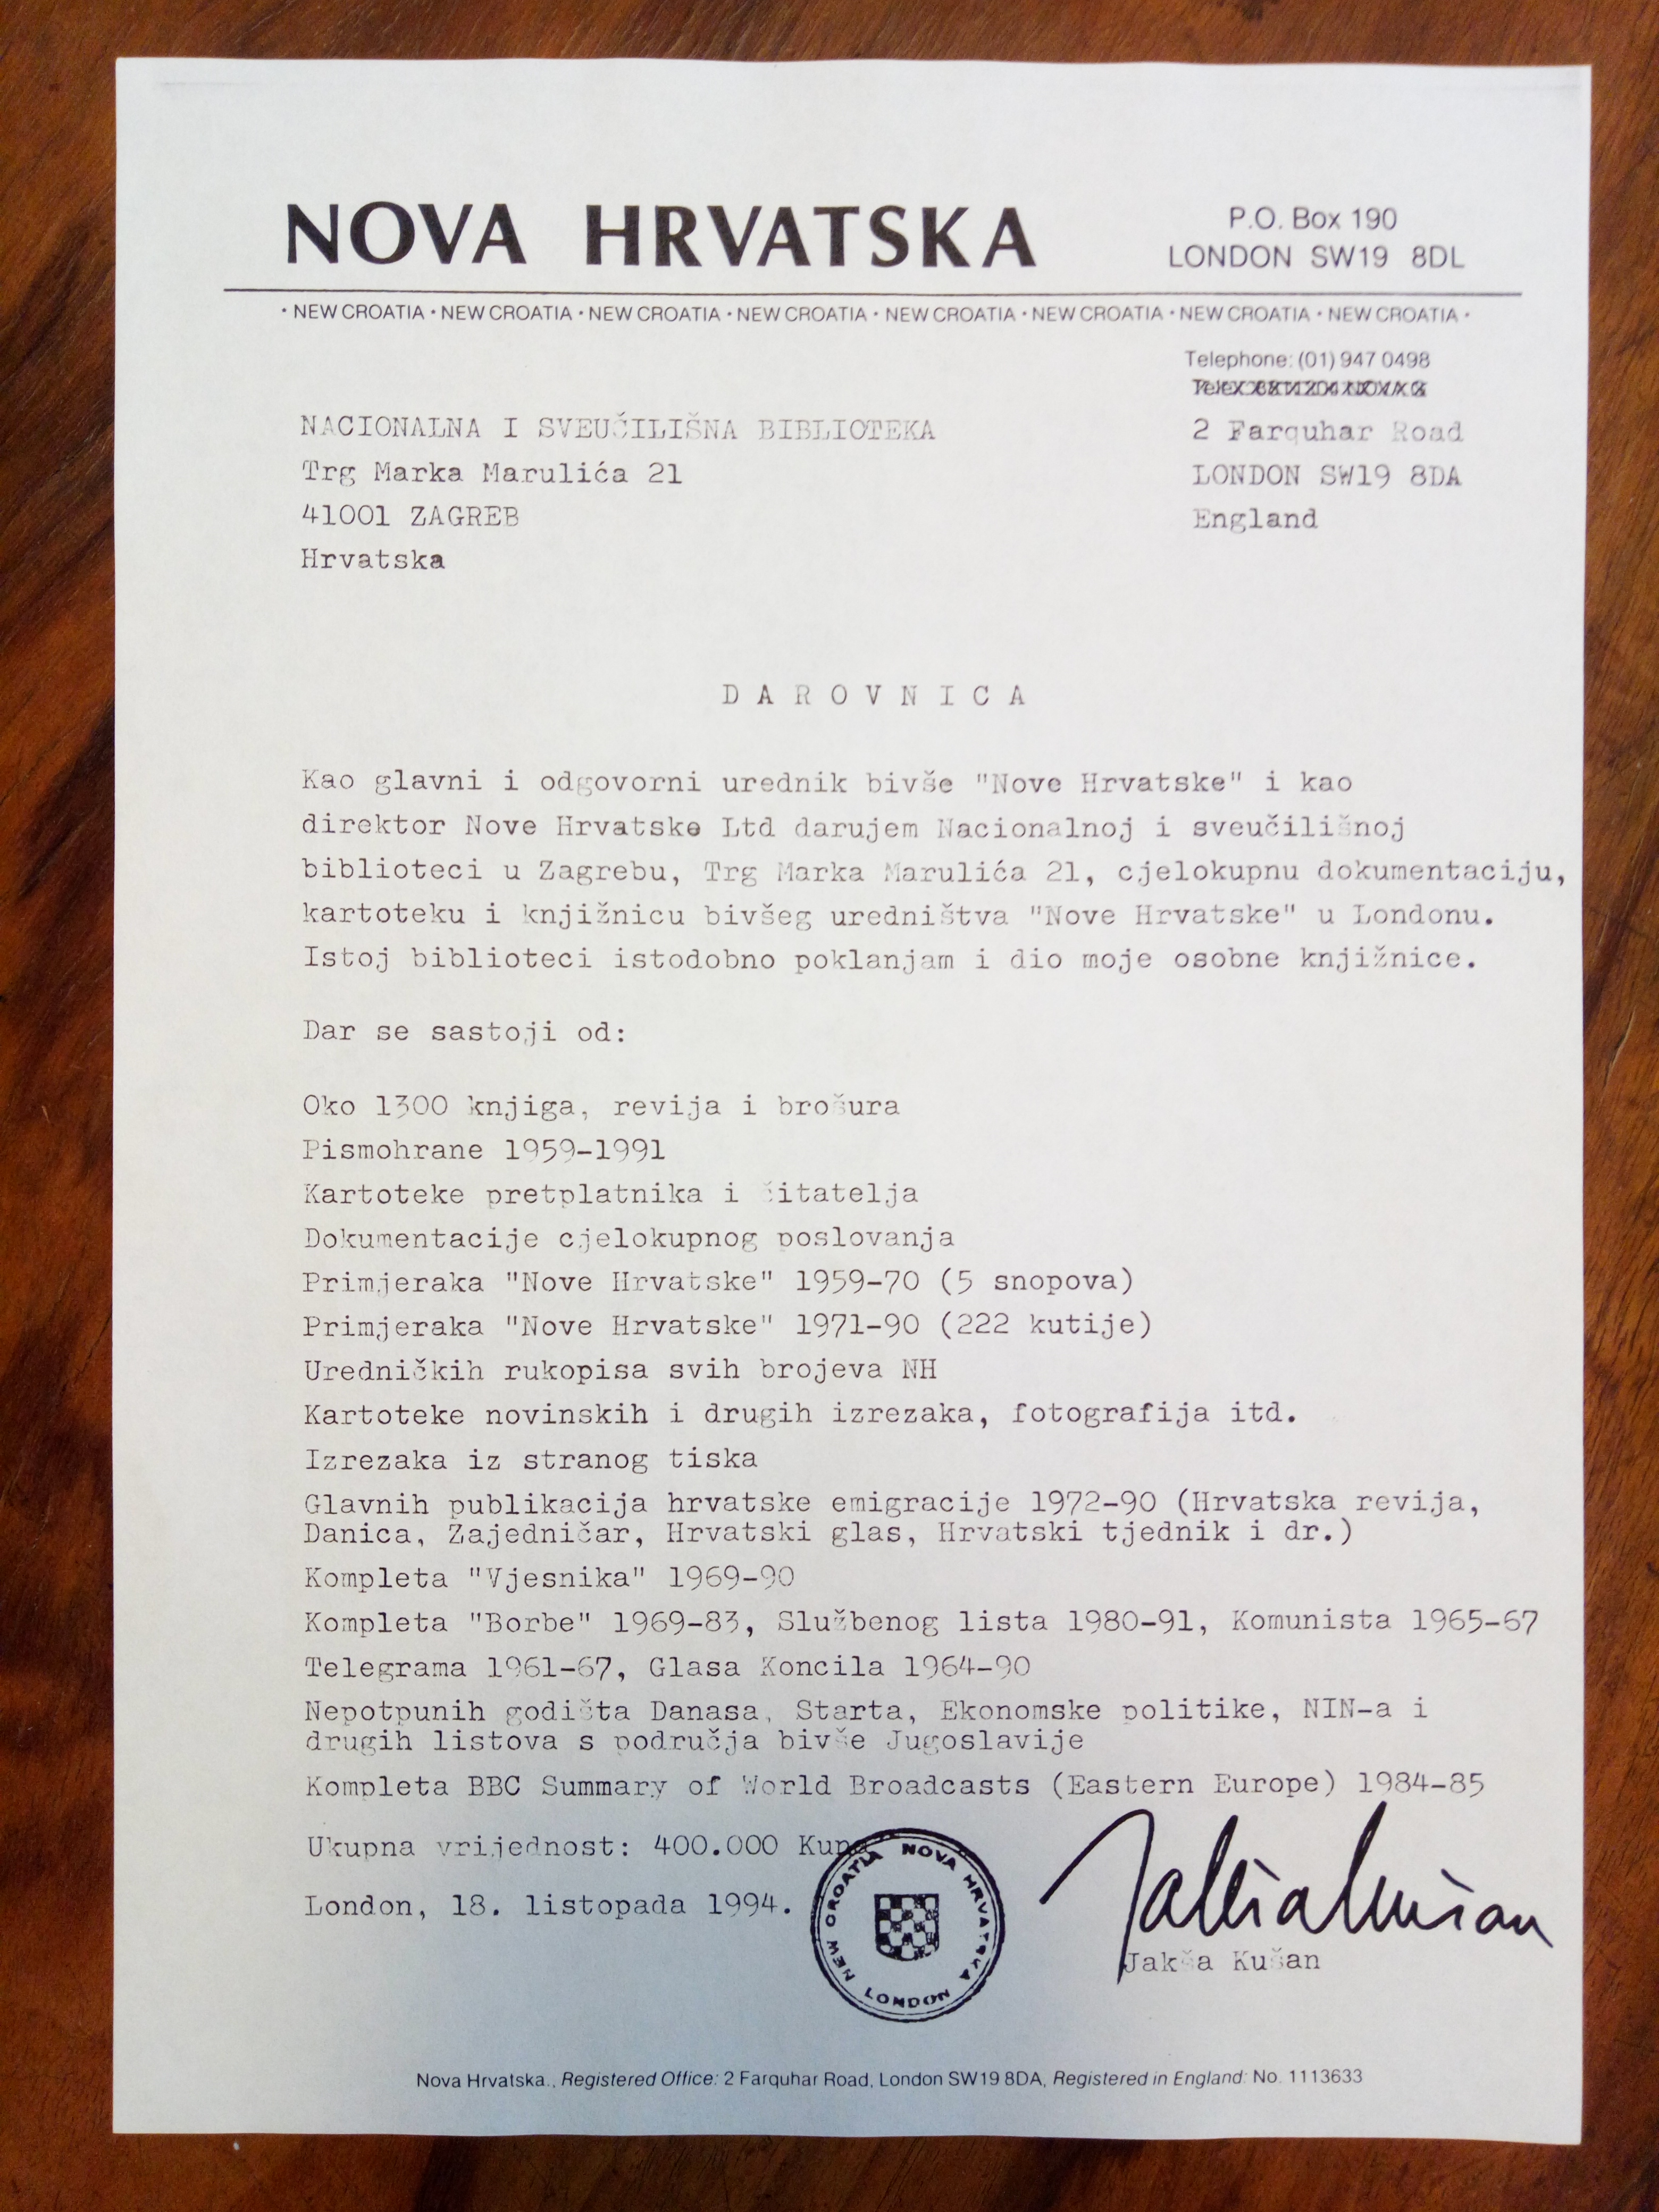 Darovnica Jakše Kušana Nacionalnoj i sveučilišnoj knjižnici u Zagrebu. (18. listopada 1994.) 